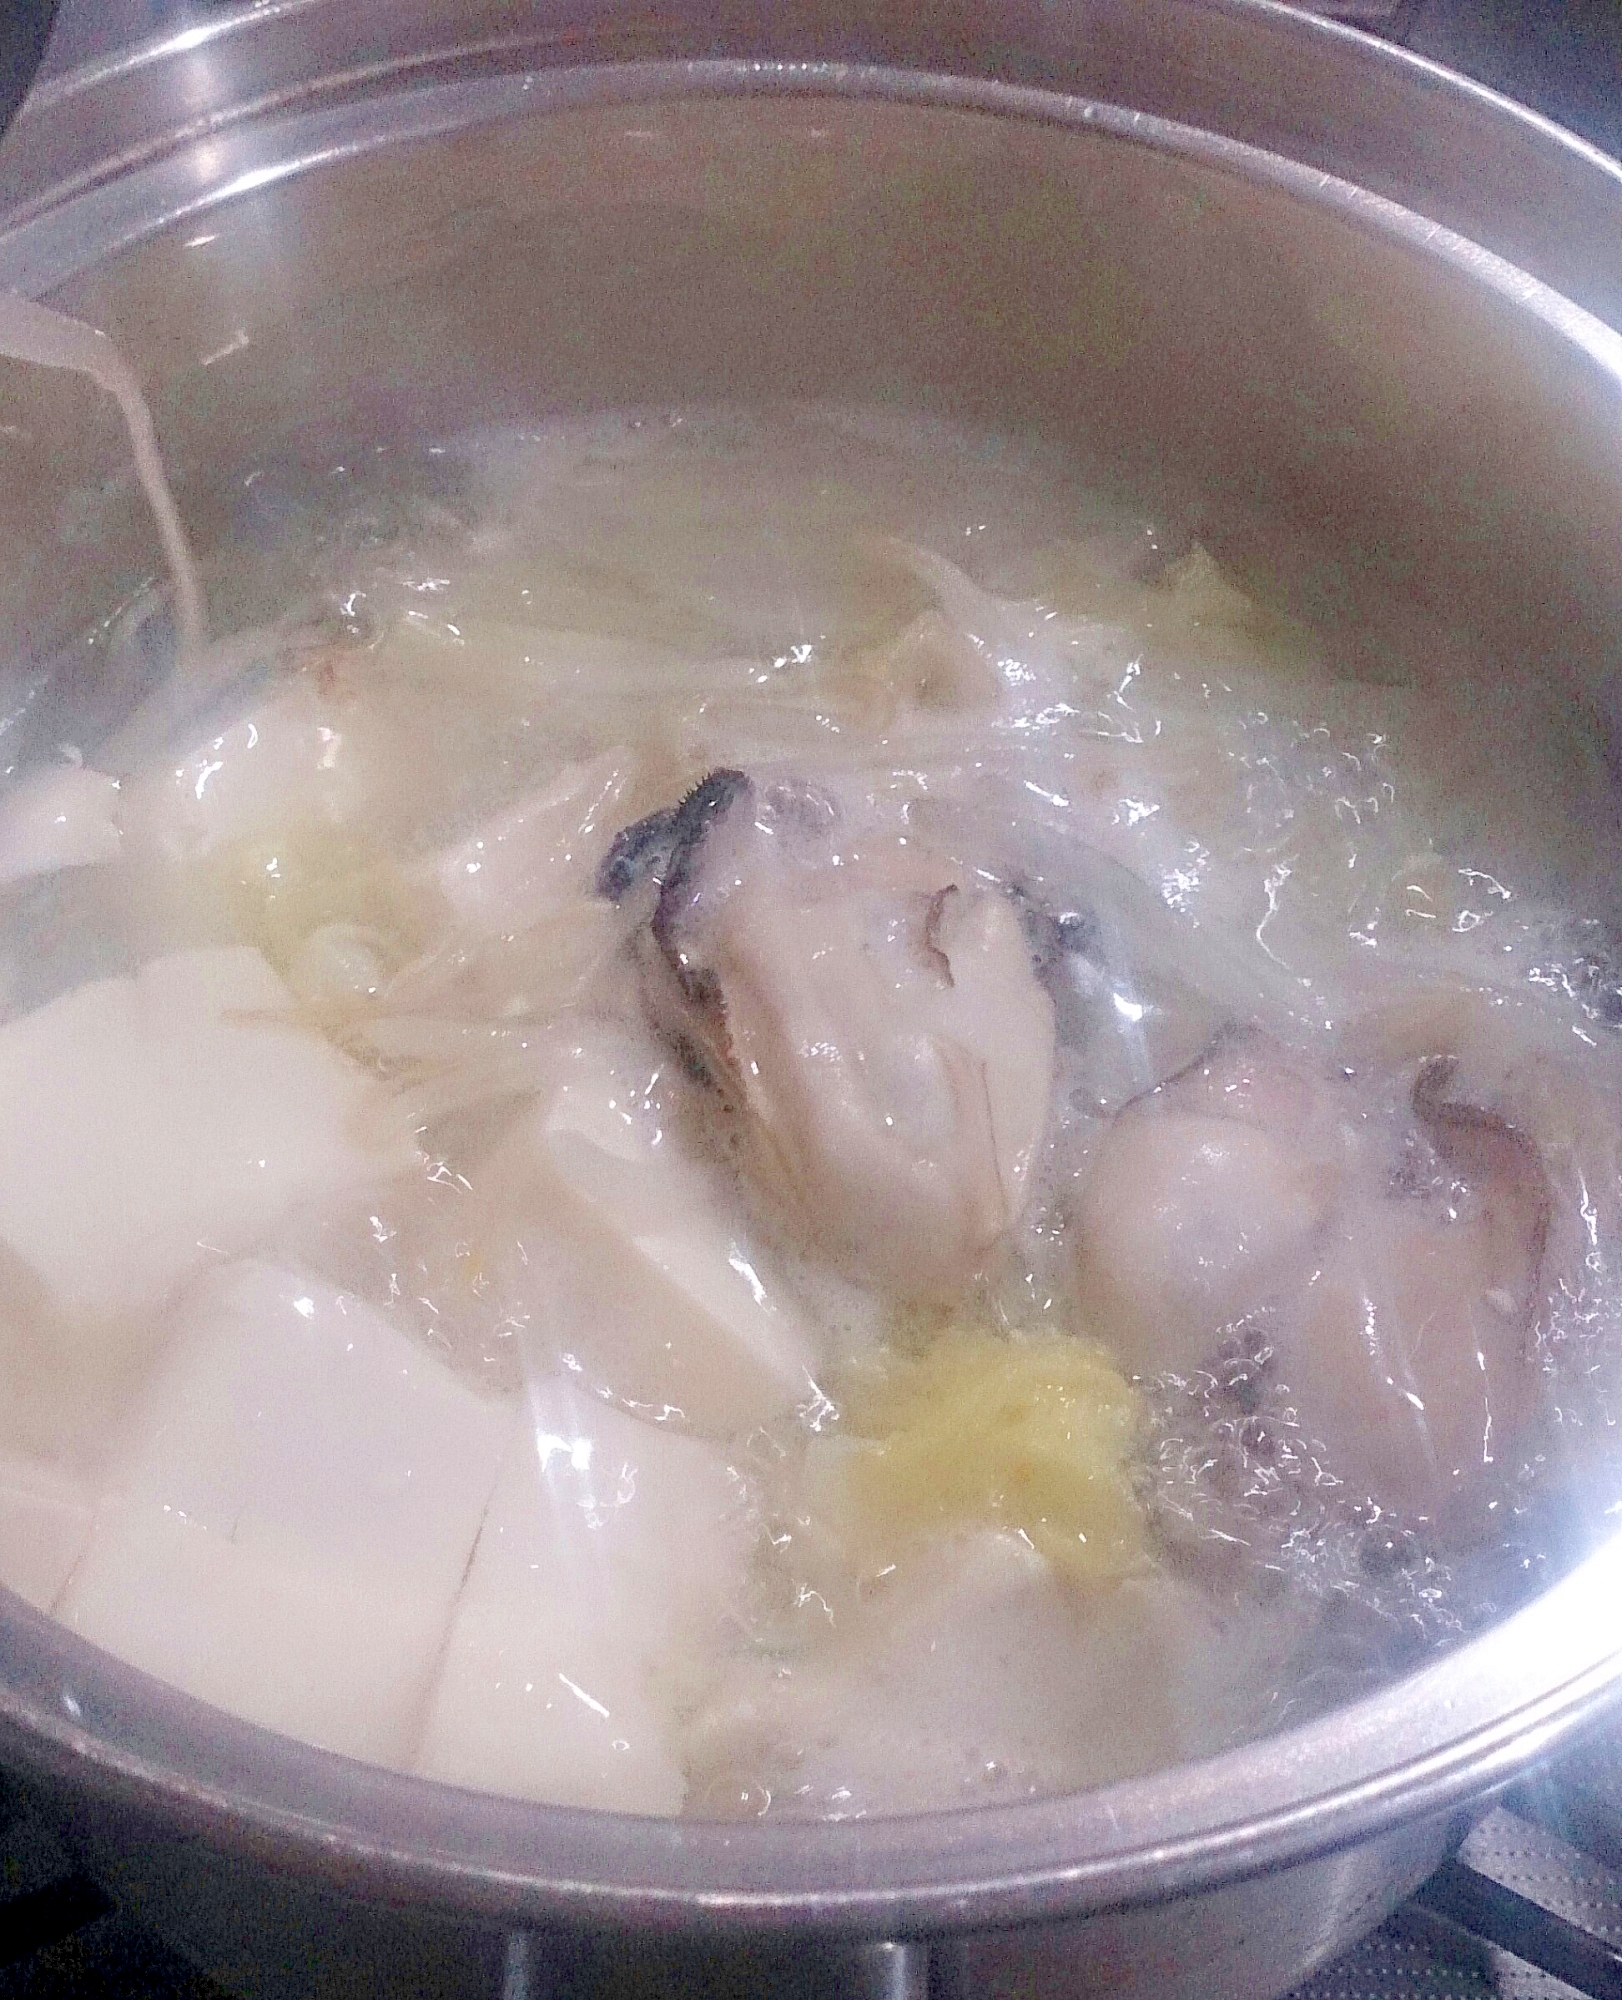 牡蠣の簡単湯豆腐鍋